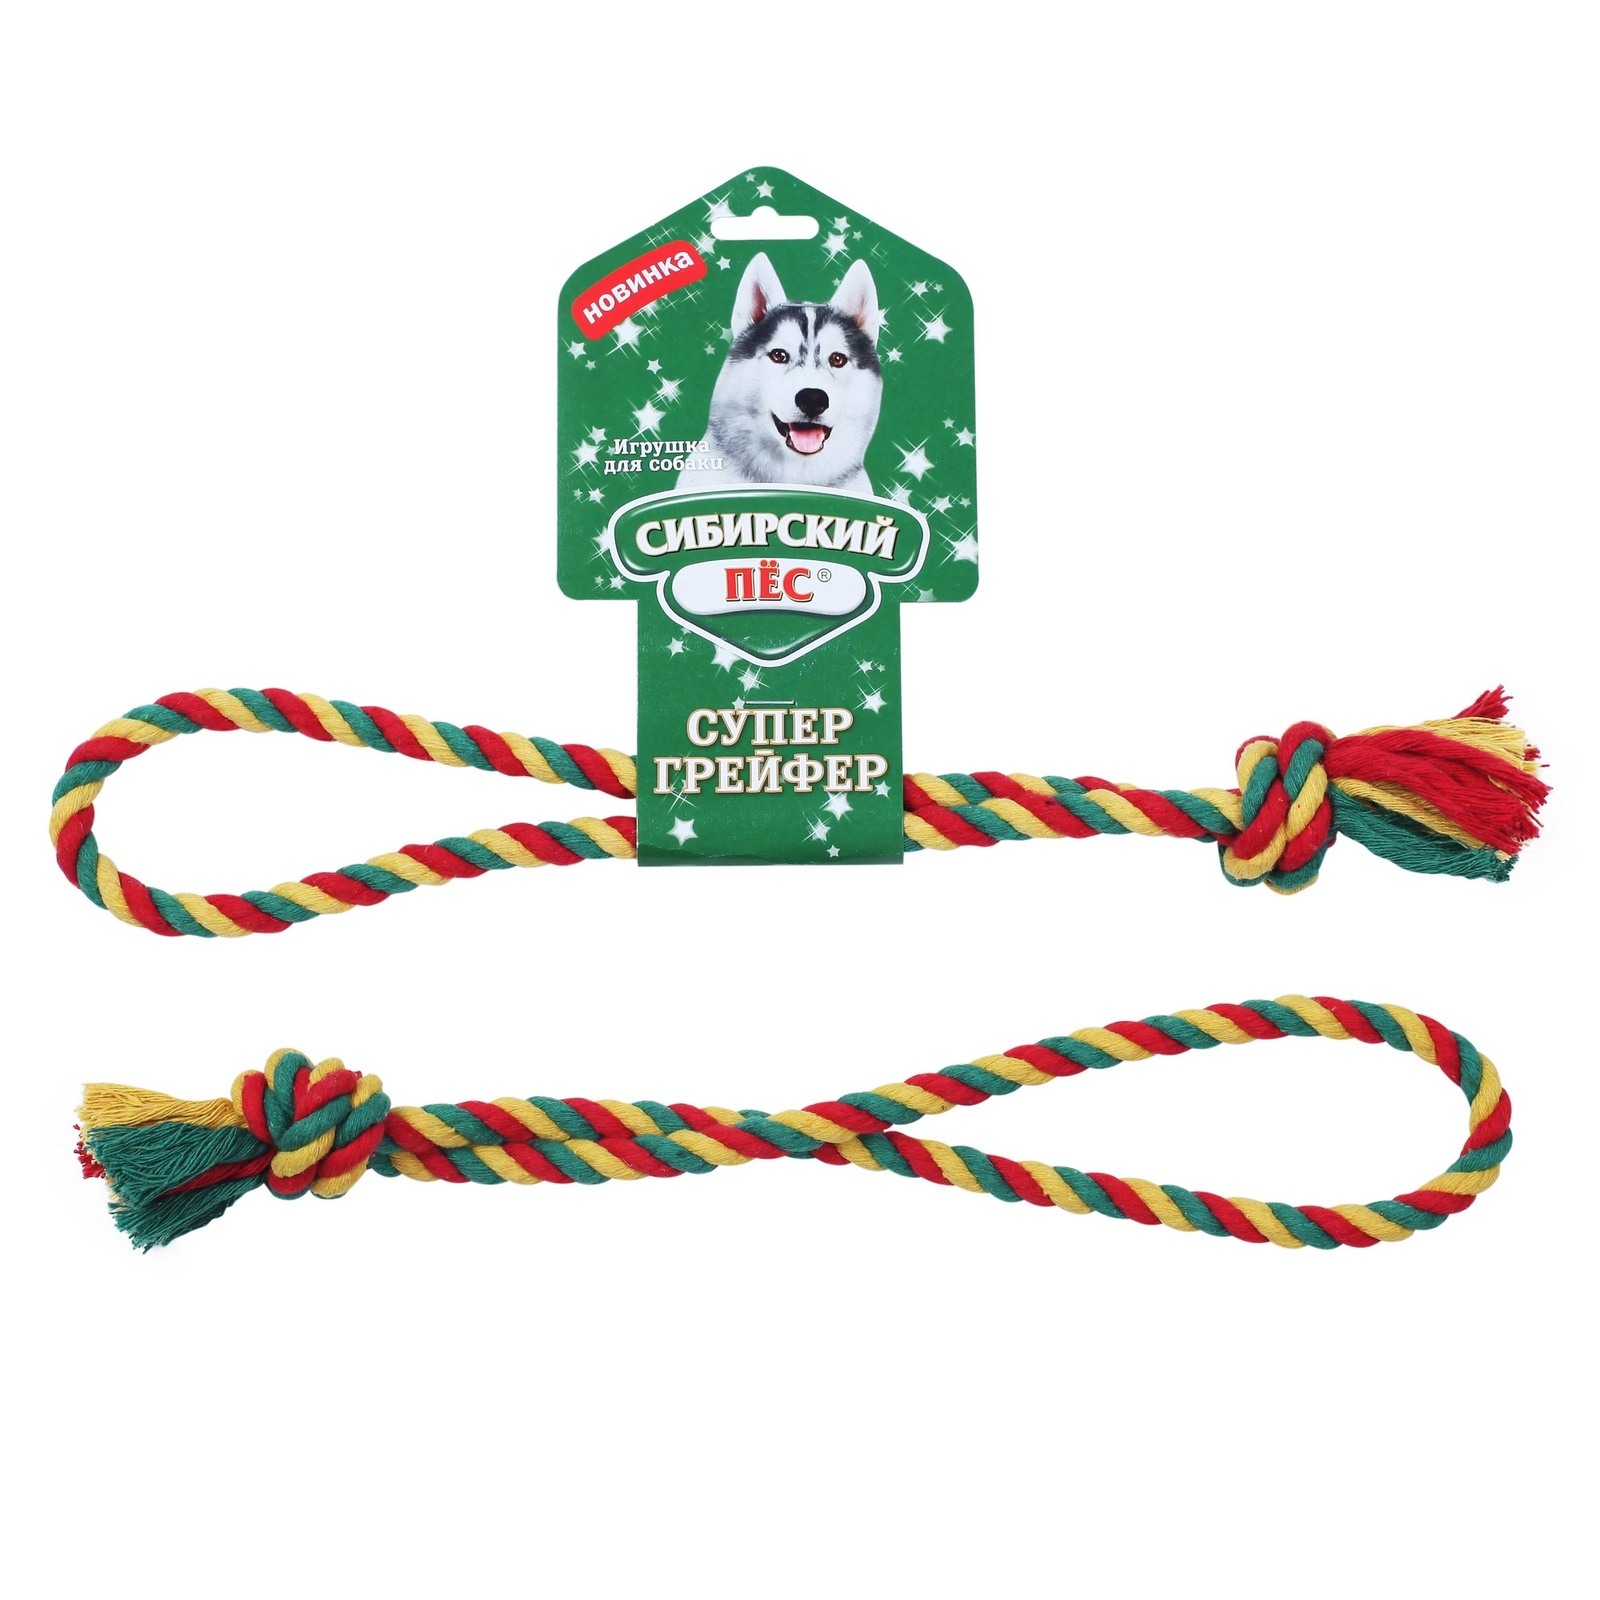 Сибирская кошка Сибирская кошка сибирский Пес игрушка для собаки Грейфер, цветная верёвка кольцо (62 г)